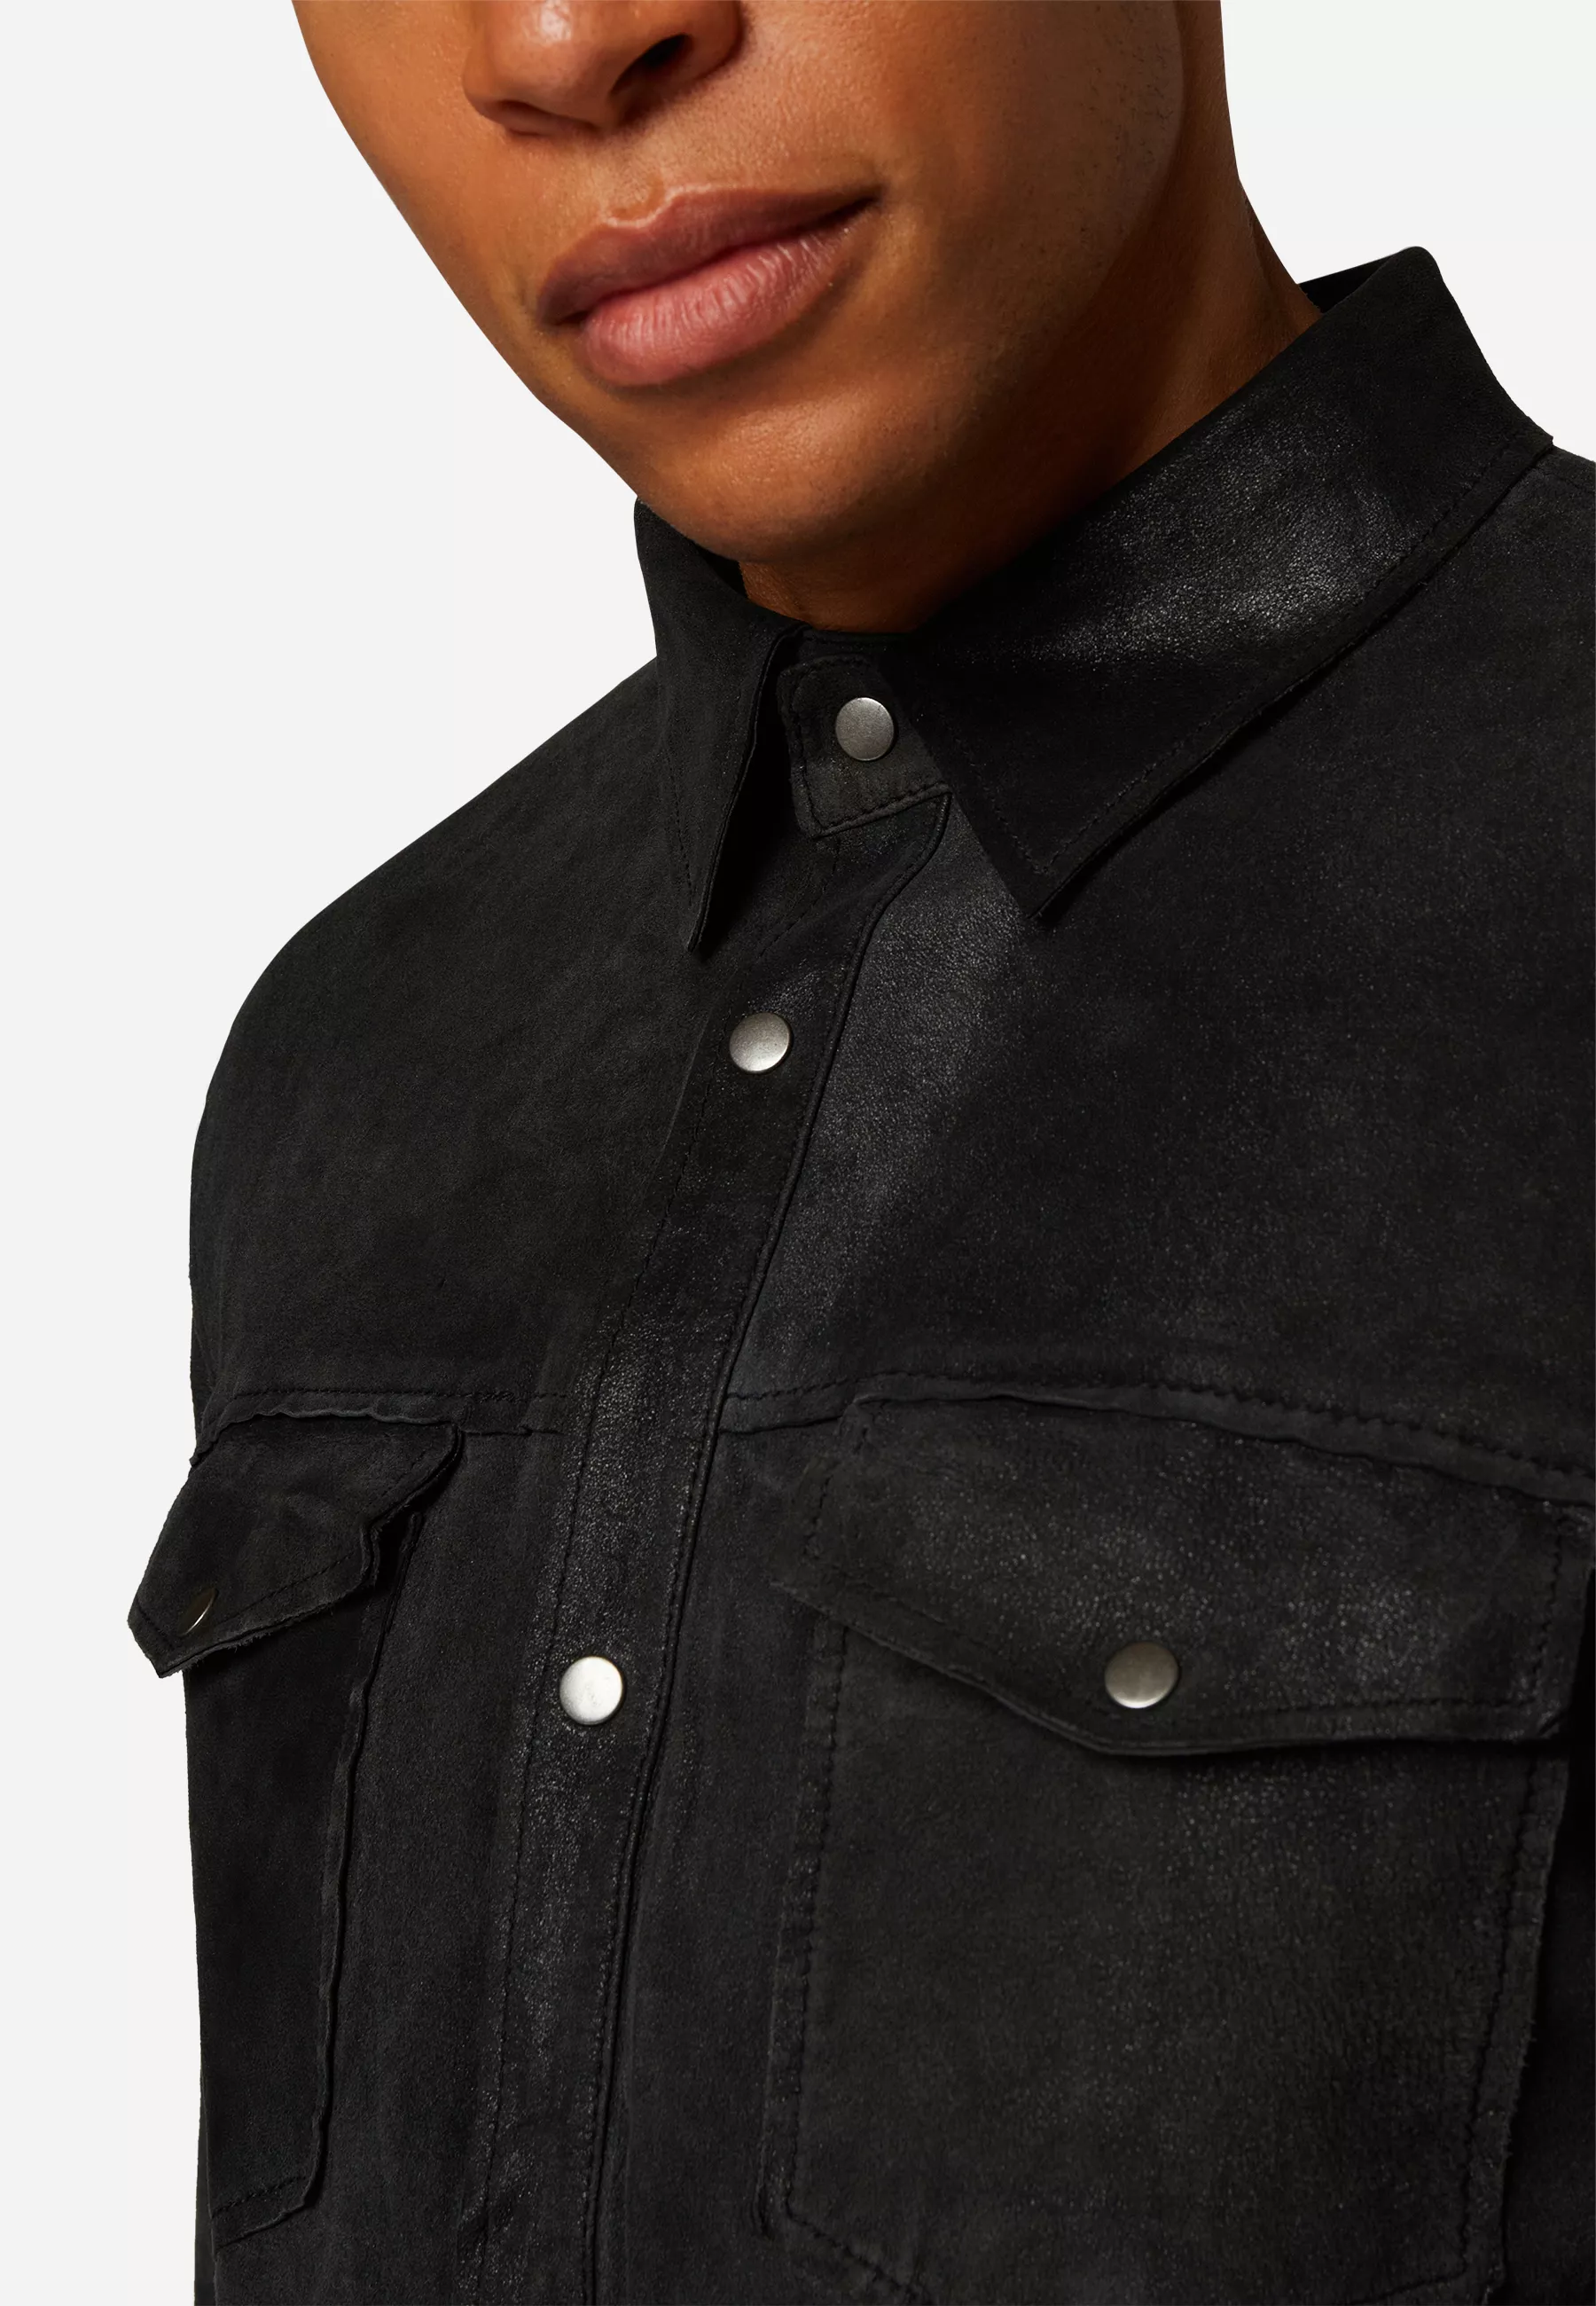 Herren Lederjacke Reverse Shirt Wildleder in Schwarz von Ricano, Detailansicht am Model vom Kragen und den Brusttaschen